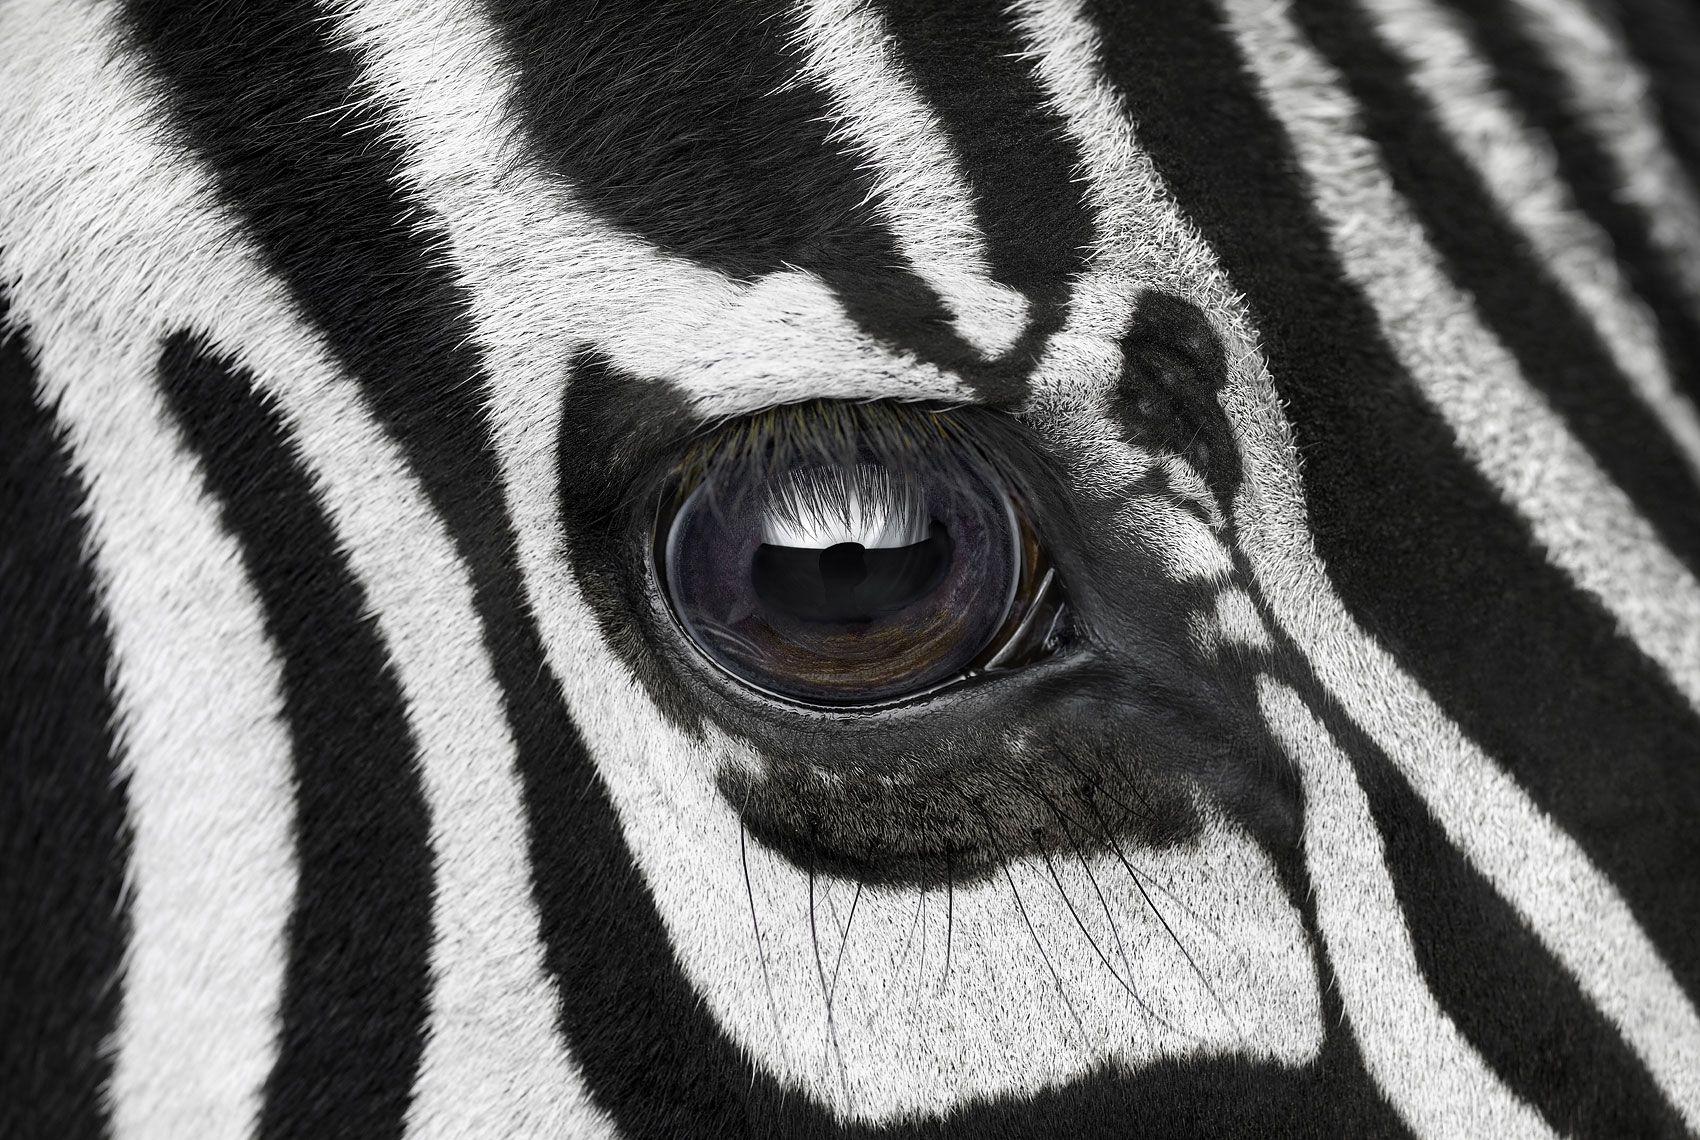 Zebra #7, Los Angeles, CA, 2016" ist eine limitierte Auflage eines Fotos des zeitgenössischen Künstlers Brad Wilson aus der Serie "Affinity", die Studioporträts von Wildtieren zeigt. 

Dieses Foto wird nur als ungerahmter Abzug verkauft. Es ist in 4